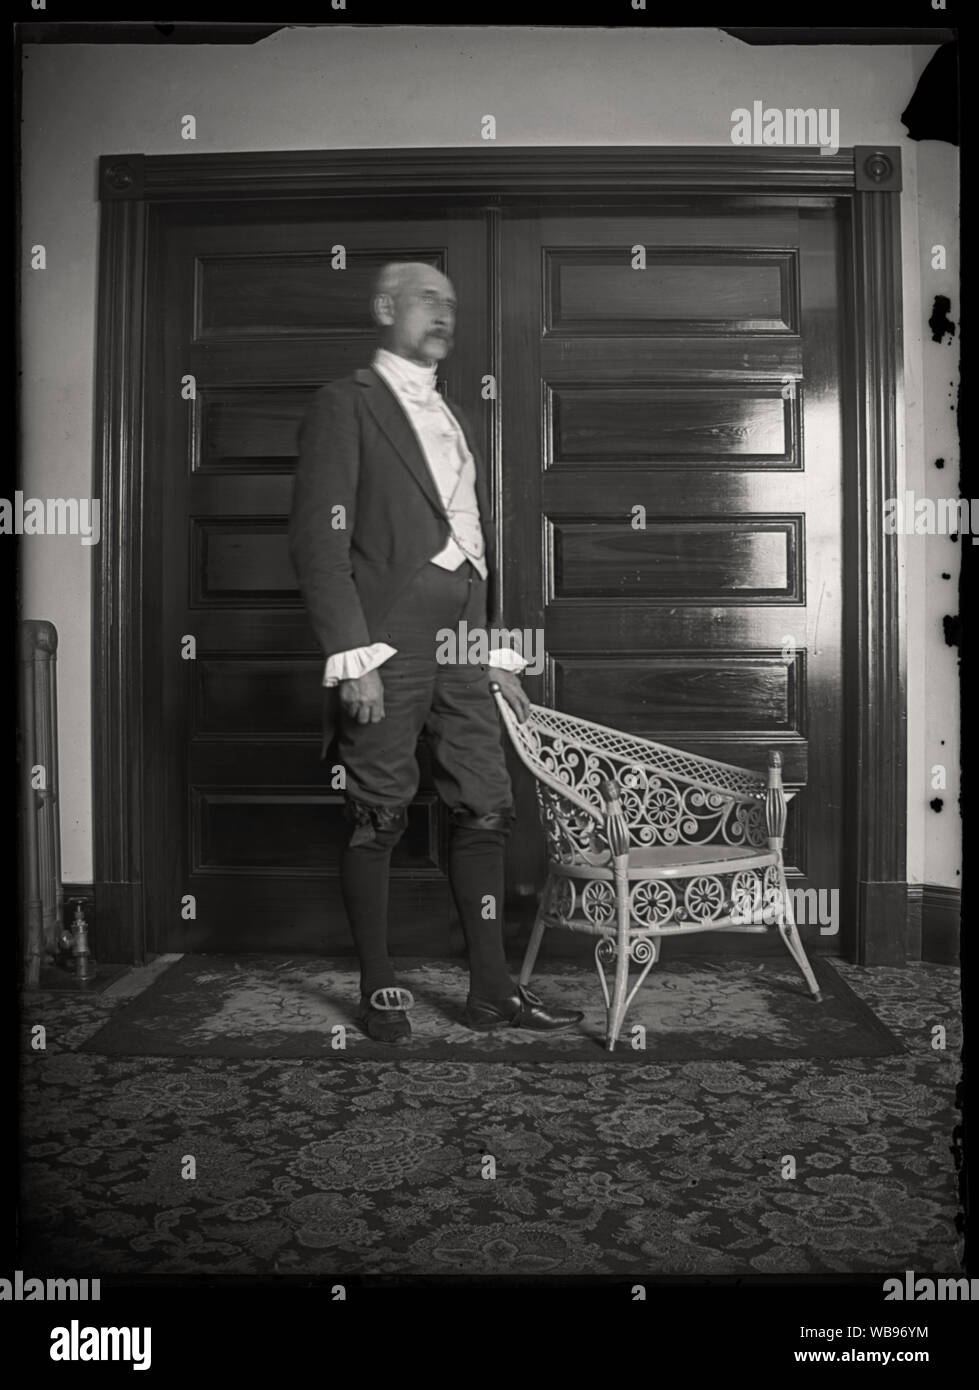 Uomo in piedi accanto ad una sedia di vimini, indossando coloniale storico con lo stile del periodo di vestiti. Scansione di originali dalla lastra di vetro negativo circa primi 1900s. Foto Stock